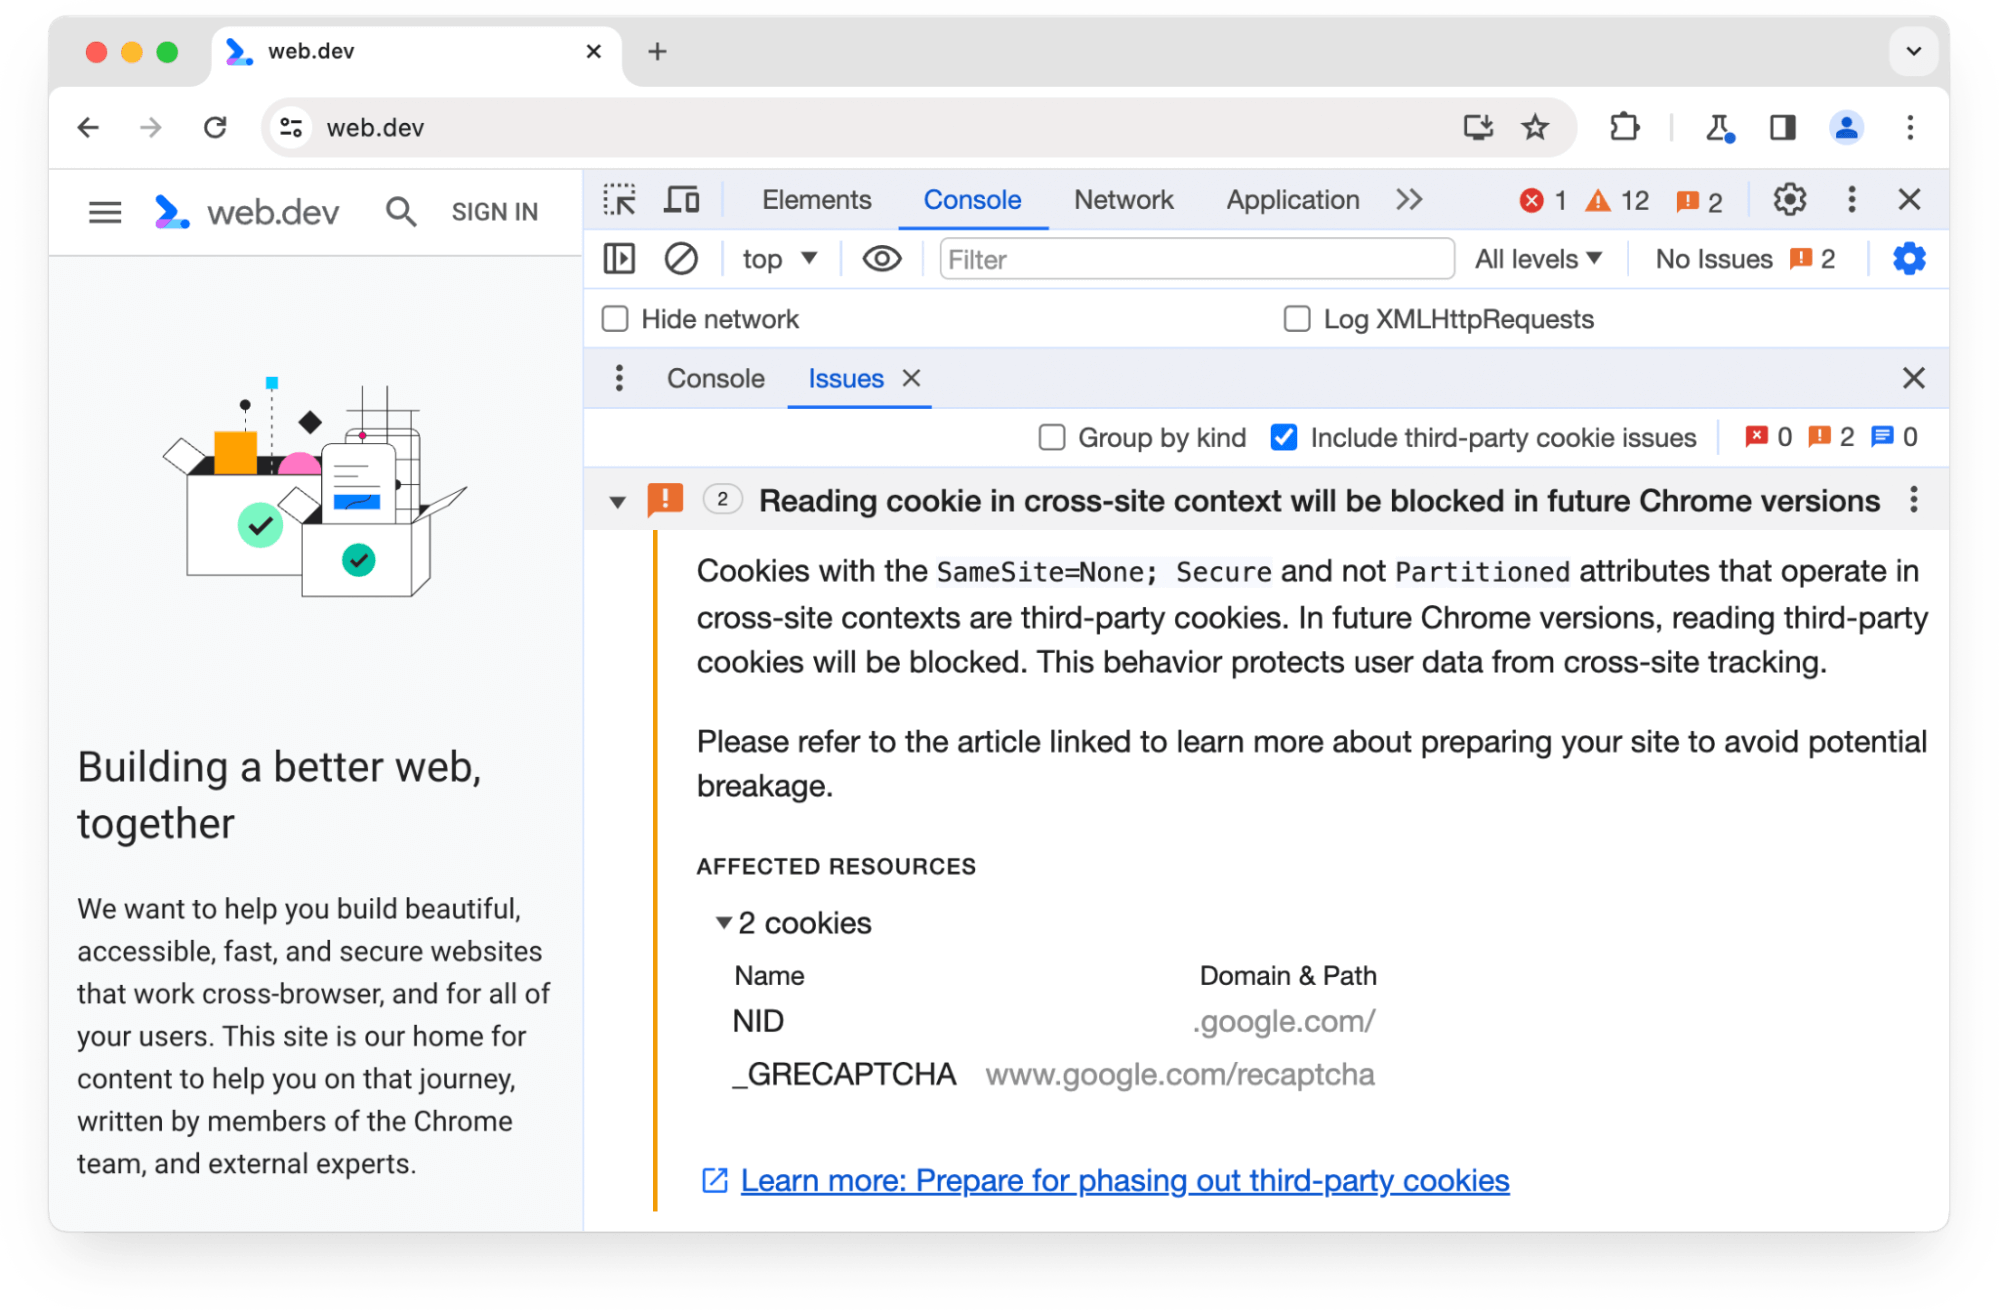 Chrome DevTools की समस्याओं वाले पैनल में, तीसरे पक्ष की उन दो कुकी के बारे में चेतावनी दी गई है जिन्हें Chrome के आने वाले वर्शन में ब्लॉक कर दिया जाएगा.